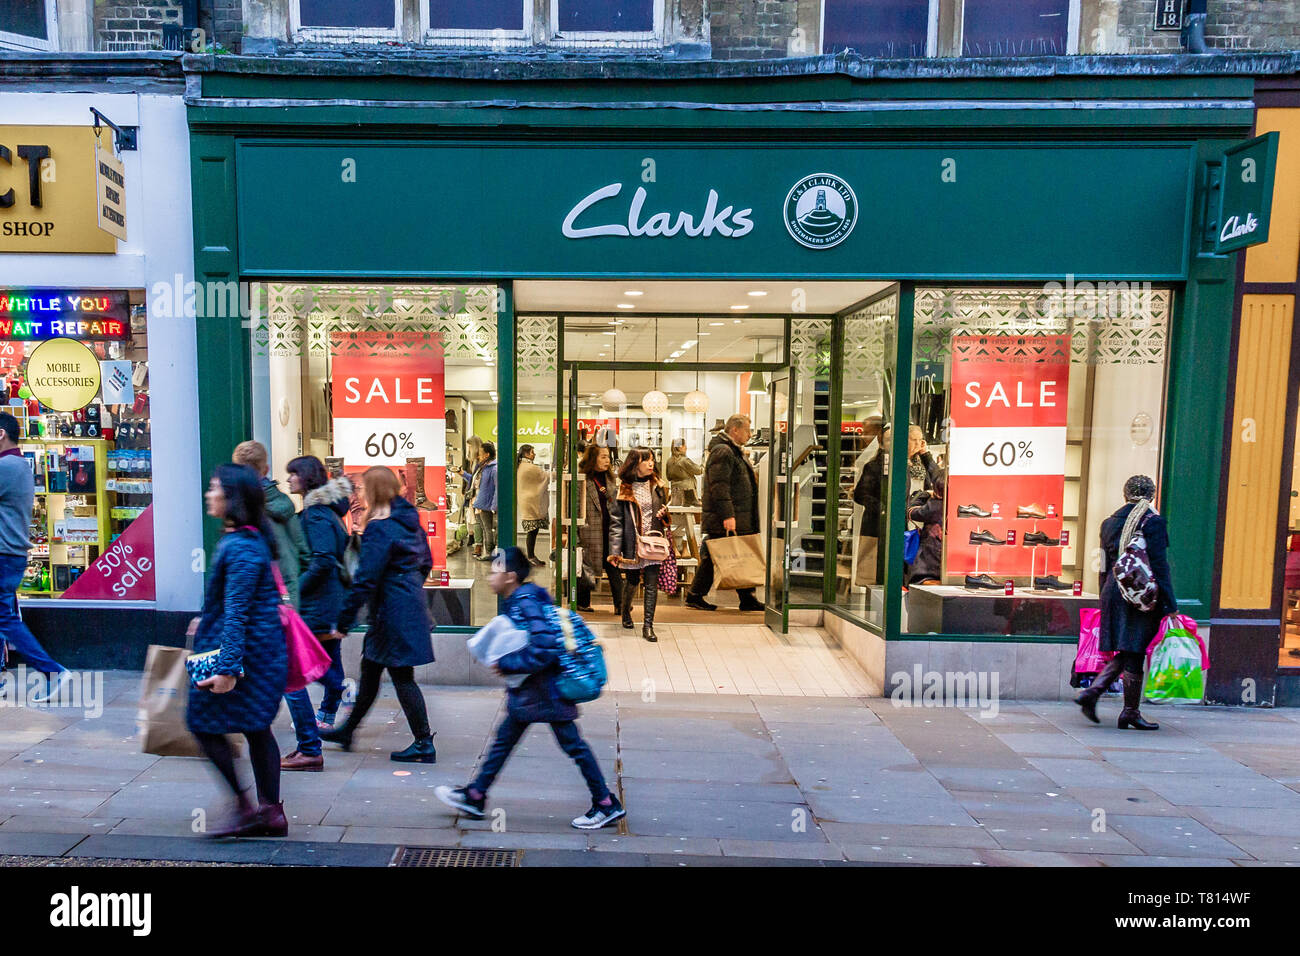 En passant devant les acheteurs à l'extérieur d'un magasin de chaussures Clarks sur une rue animée d'Oxford, au Royaume-Uni. En décembre 2018. Banque D'Images